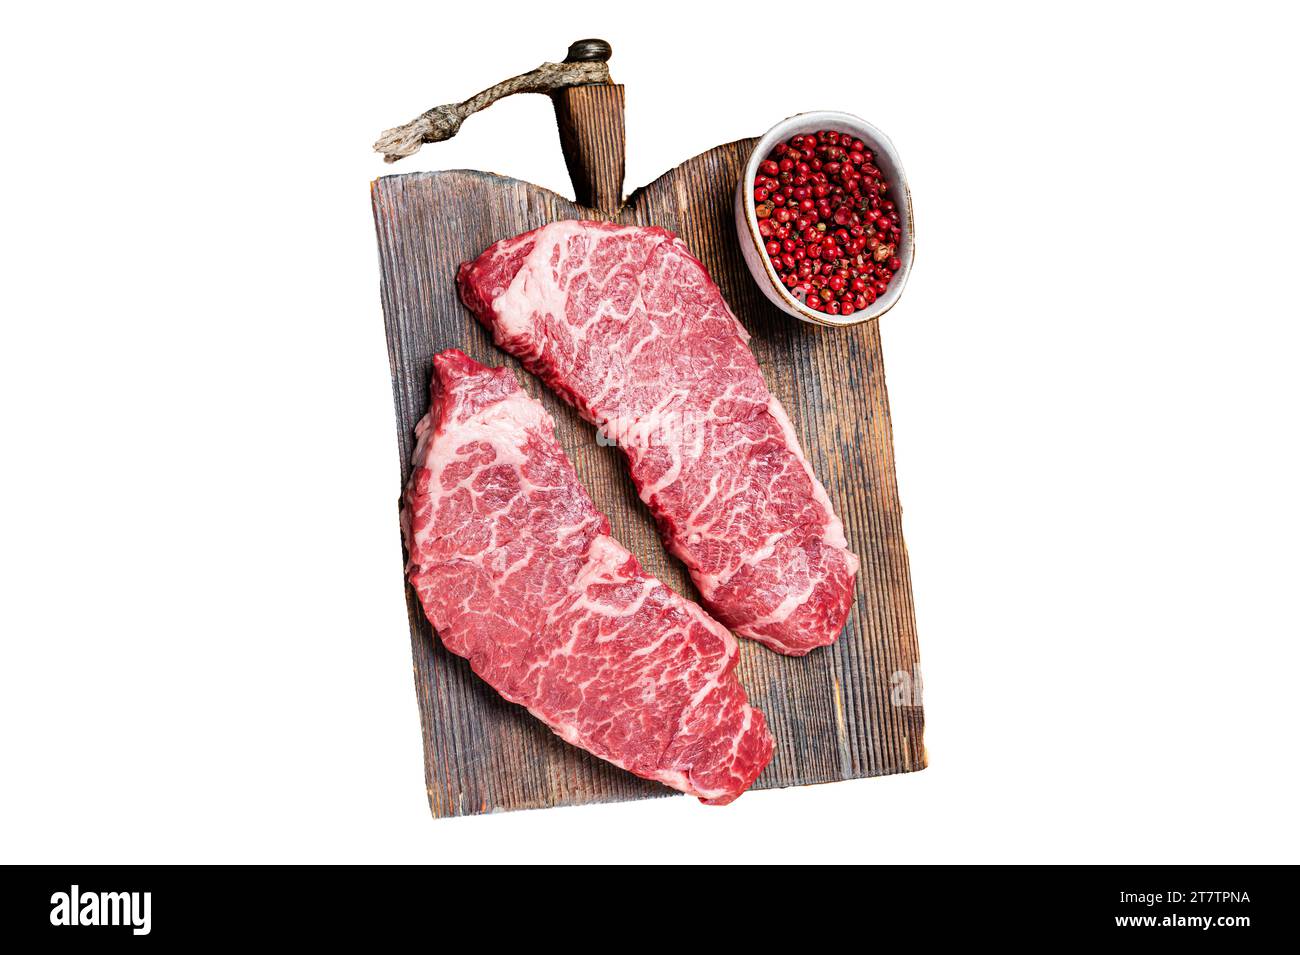 Viande de boeuf de Denver crue Steak avec poivre rose et thym. Isolé, fond blanc Banque D'Images